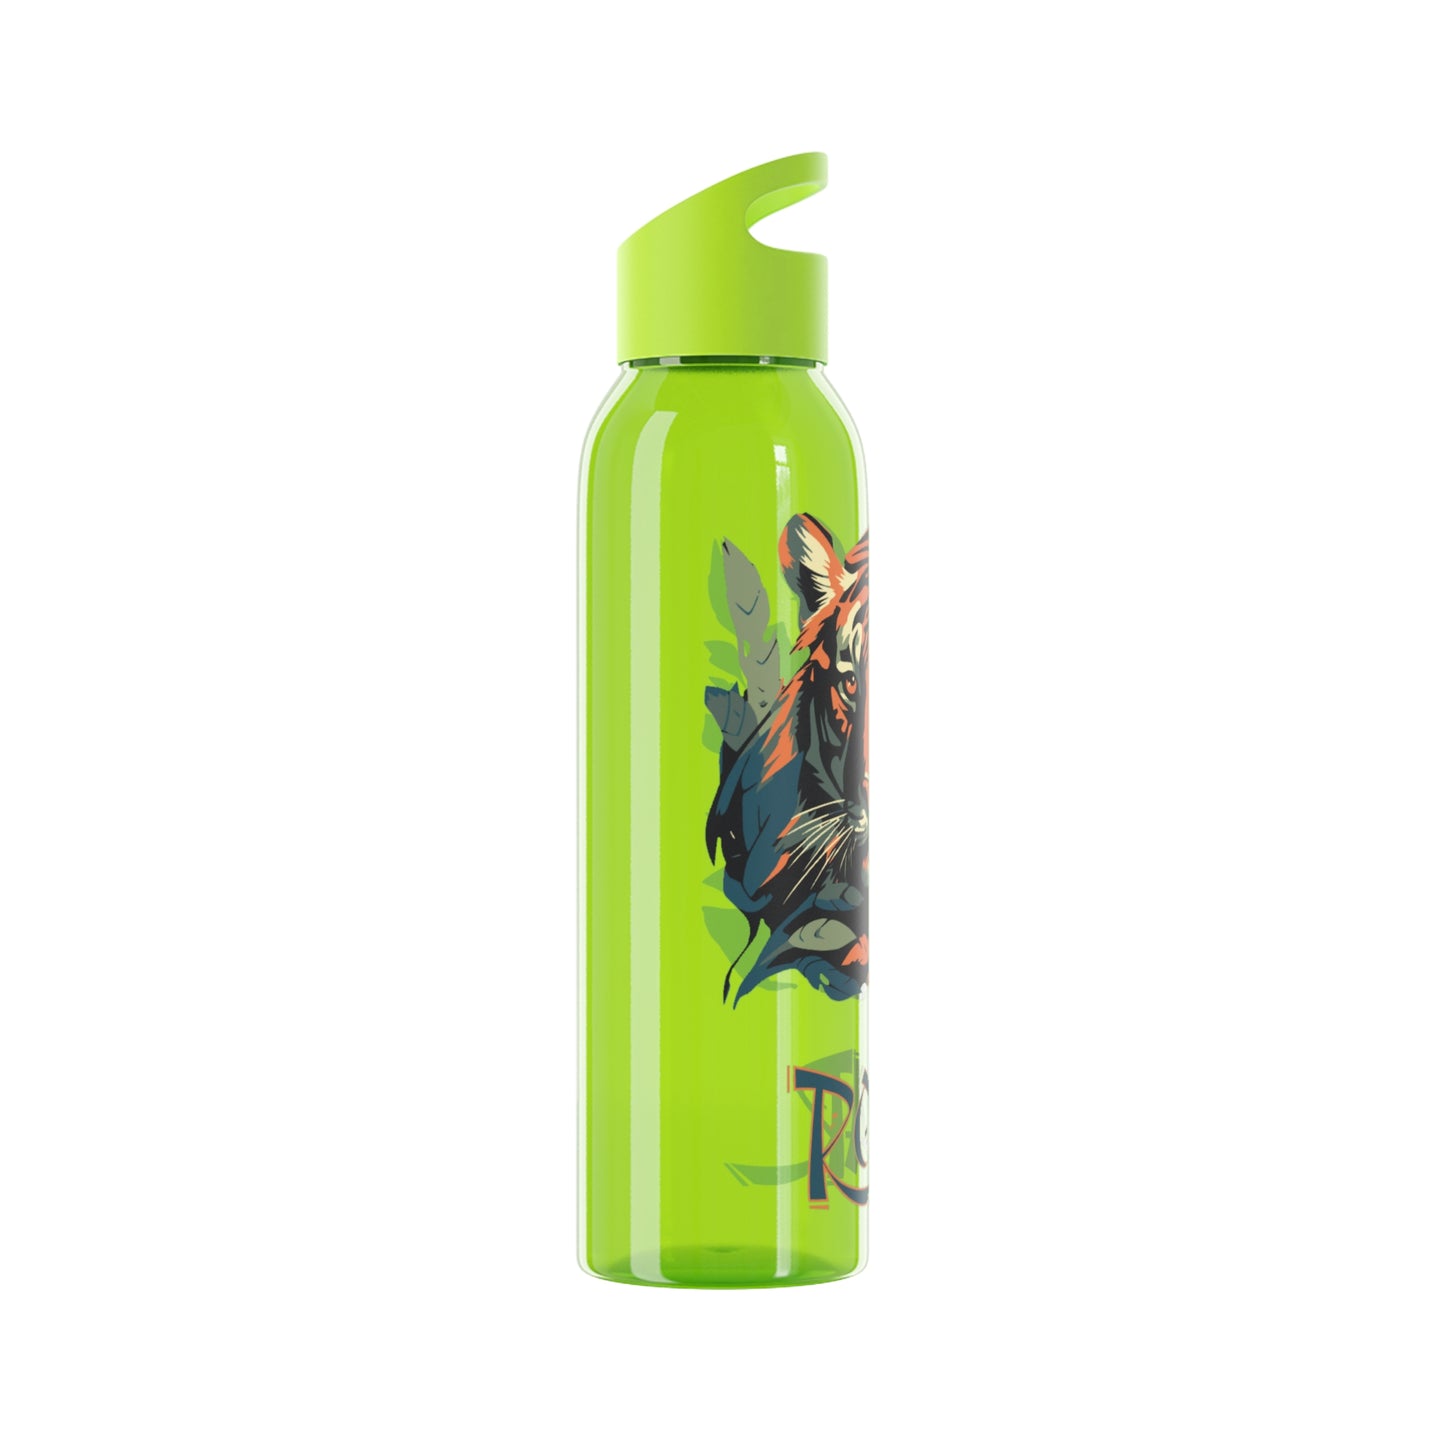 Roar | Sky Water Bottle